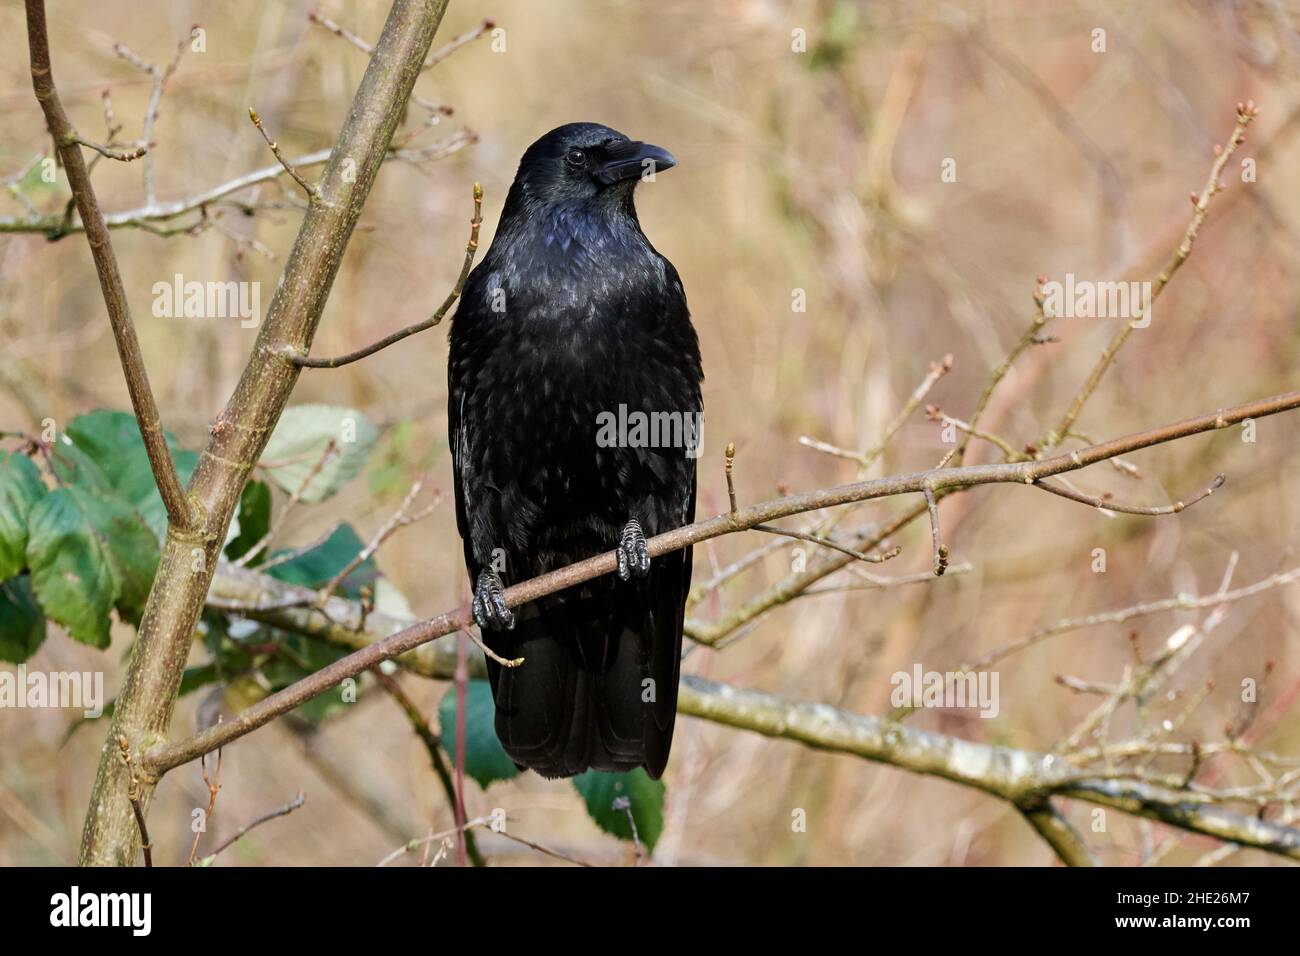 Corvo comune (Corvus corax) seduto nell'albero. Grande uccello nero della famiglia dei corvo. Foto Stock